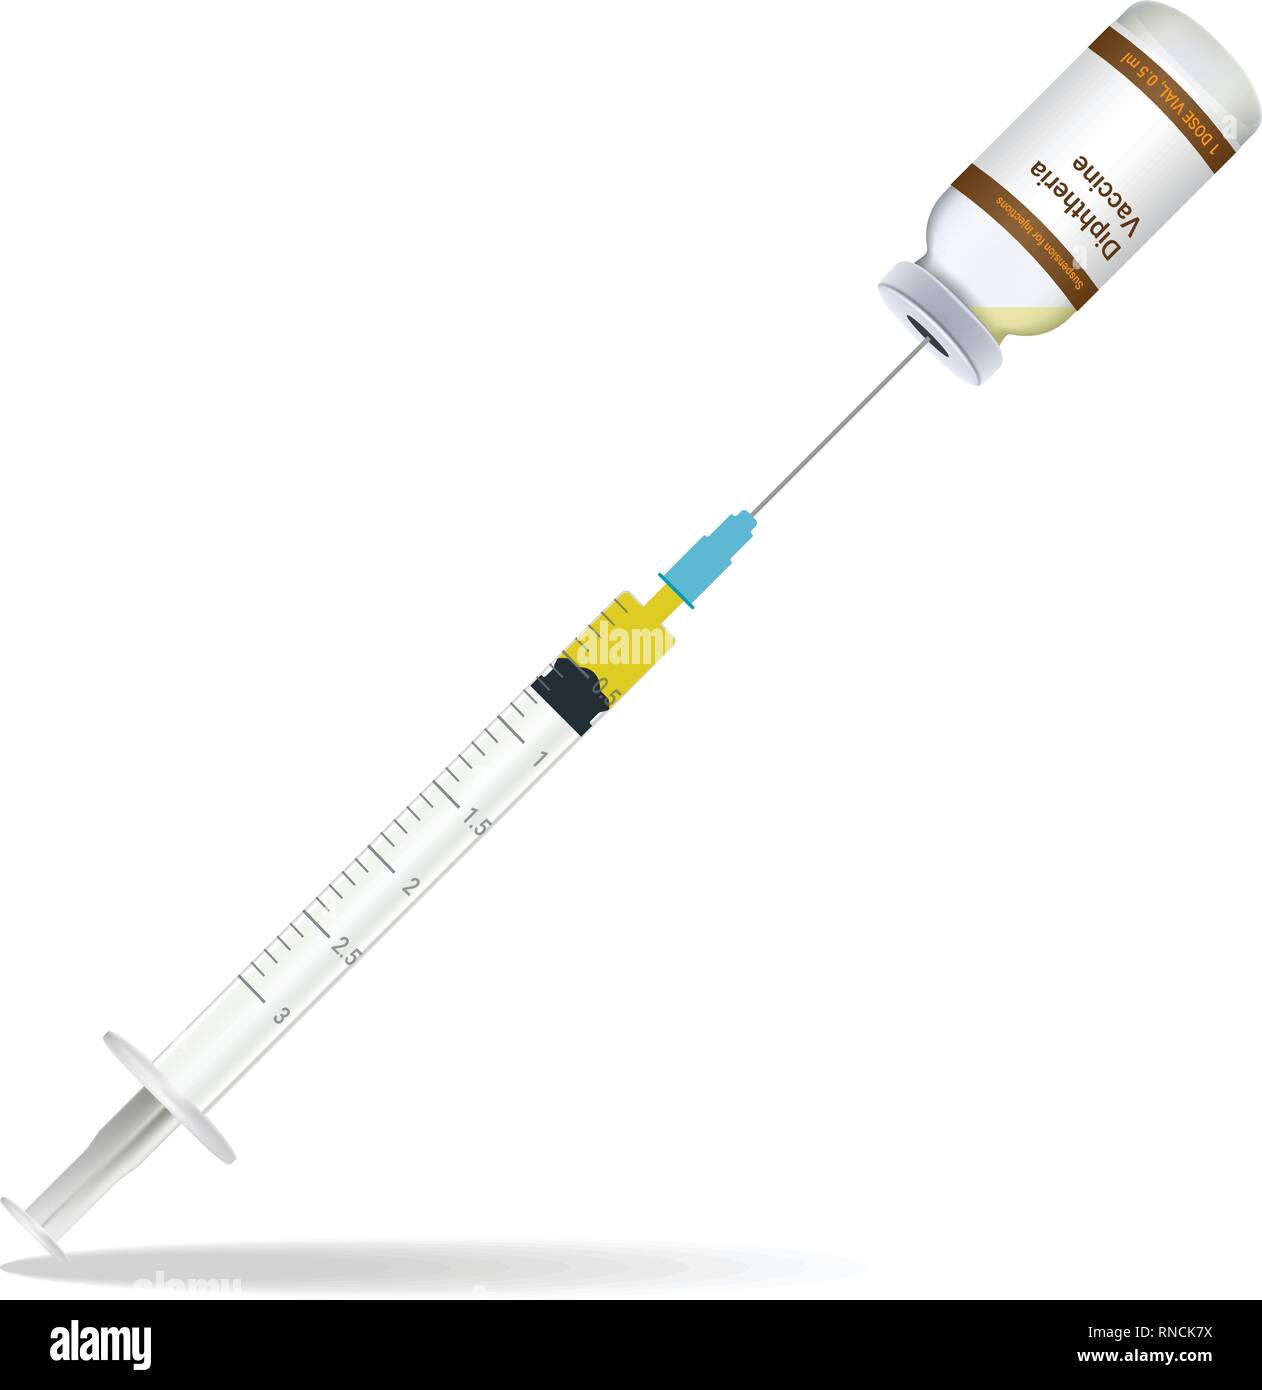 Immunizzazione difterica siringa vaccino contengono alcuni iniezione e iniezione bottiglia isolato su uno sfondo bianco. Illustrazione Vettoriale. Illustrazione Vettoriale